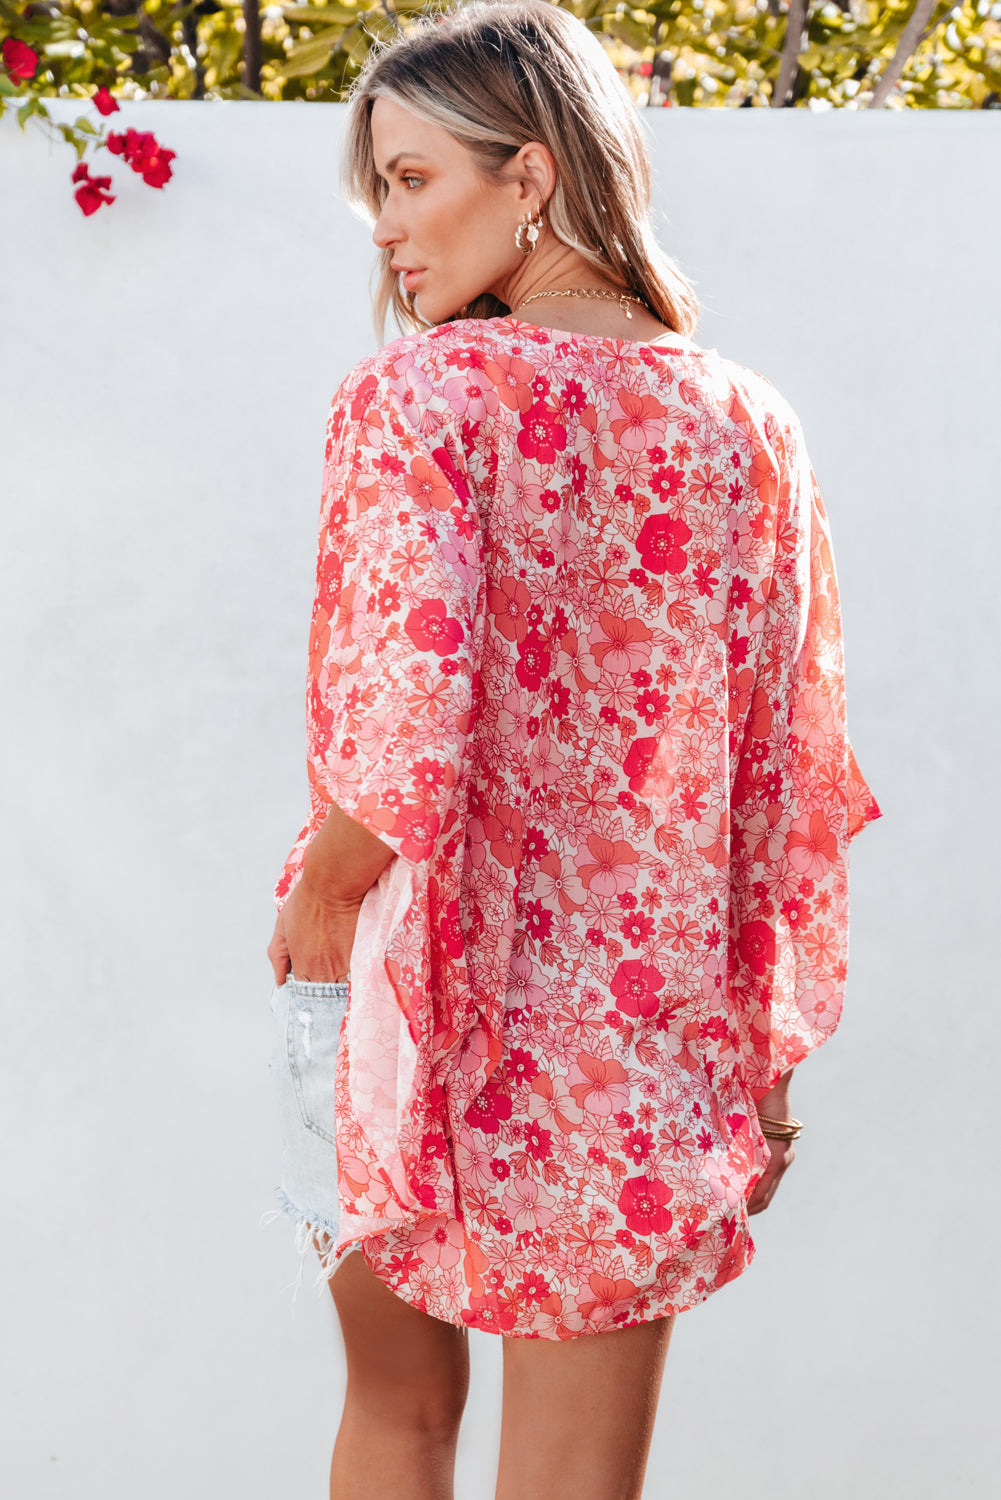 Camicetta stile kimono con scollo a V floreale rosa Boho